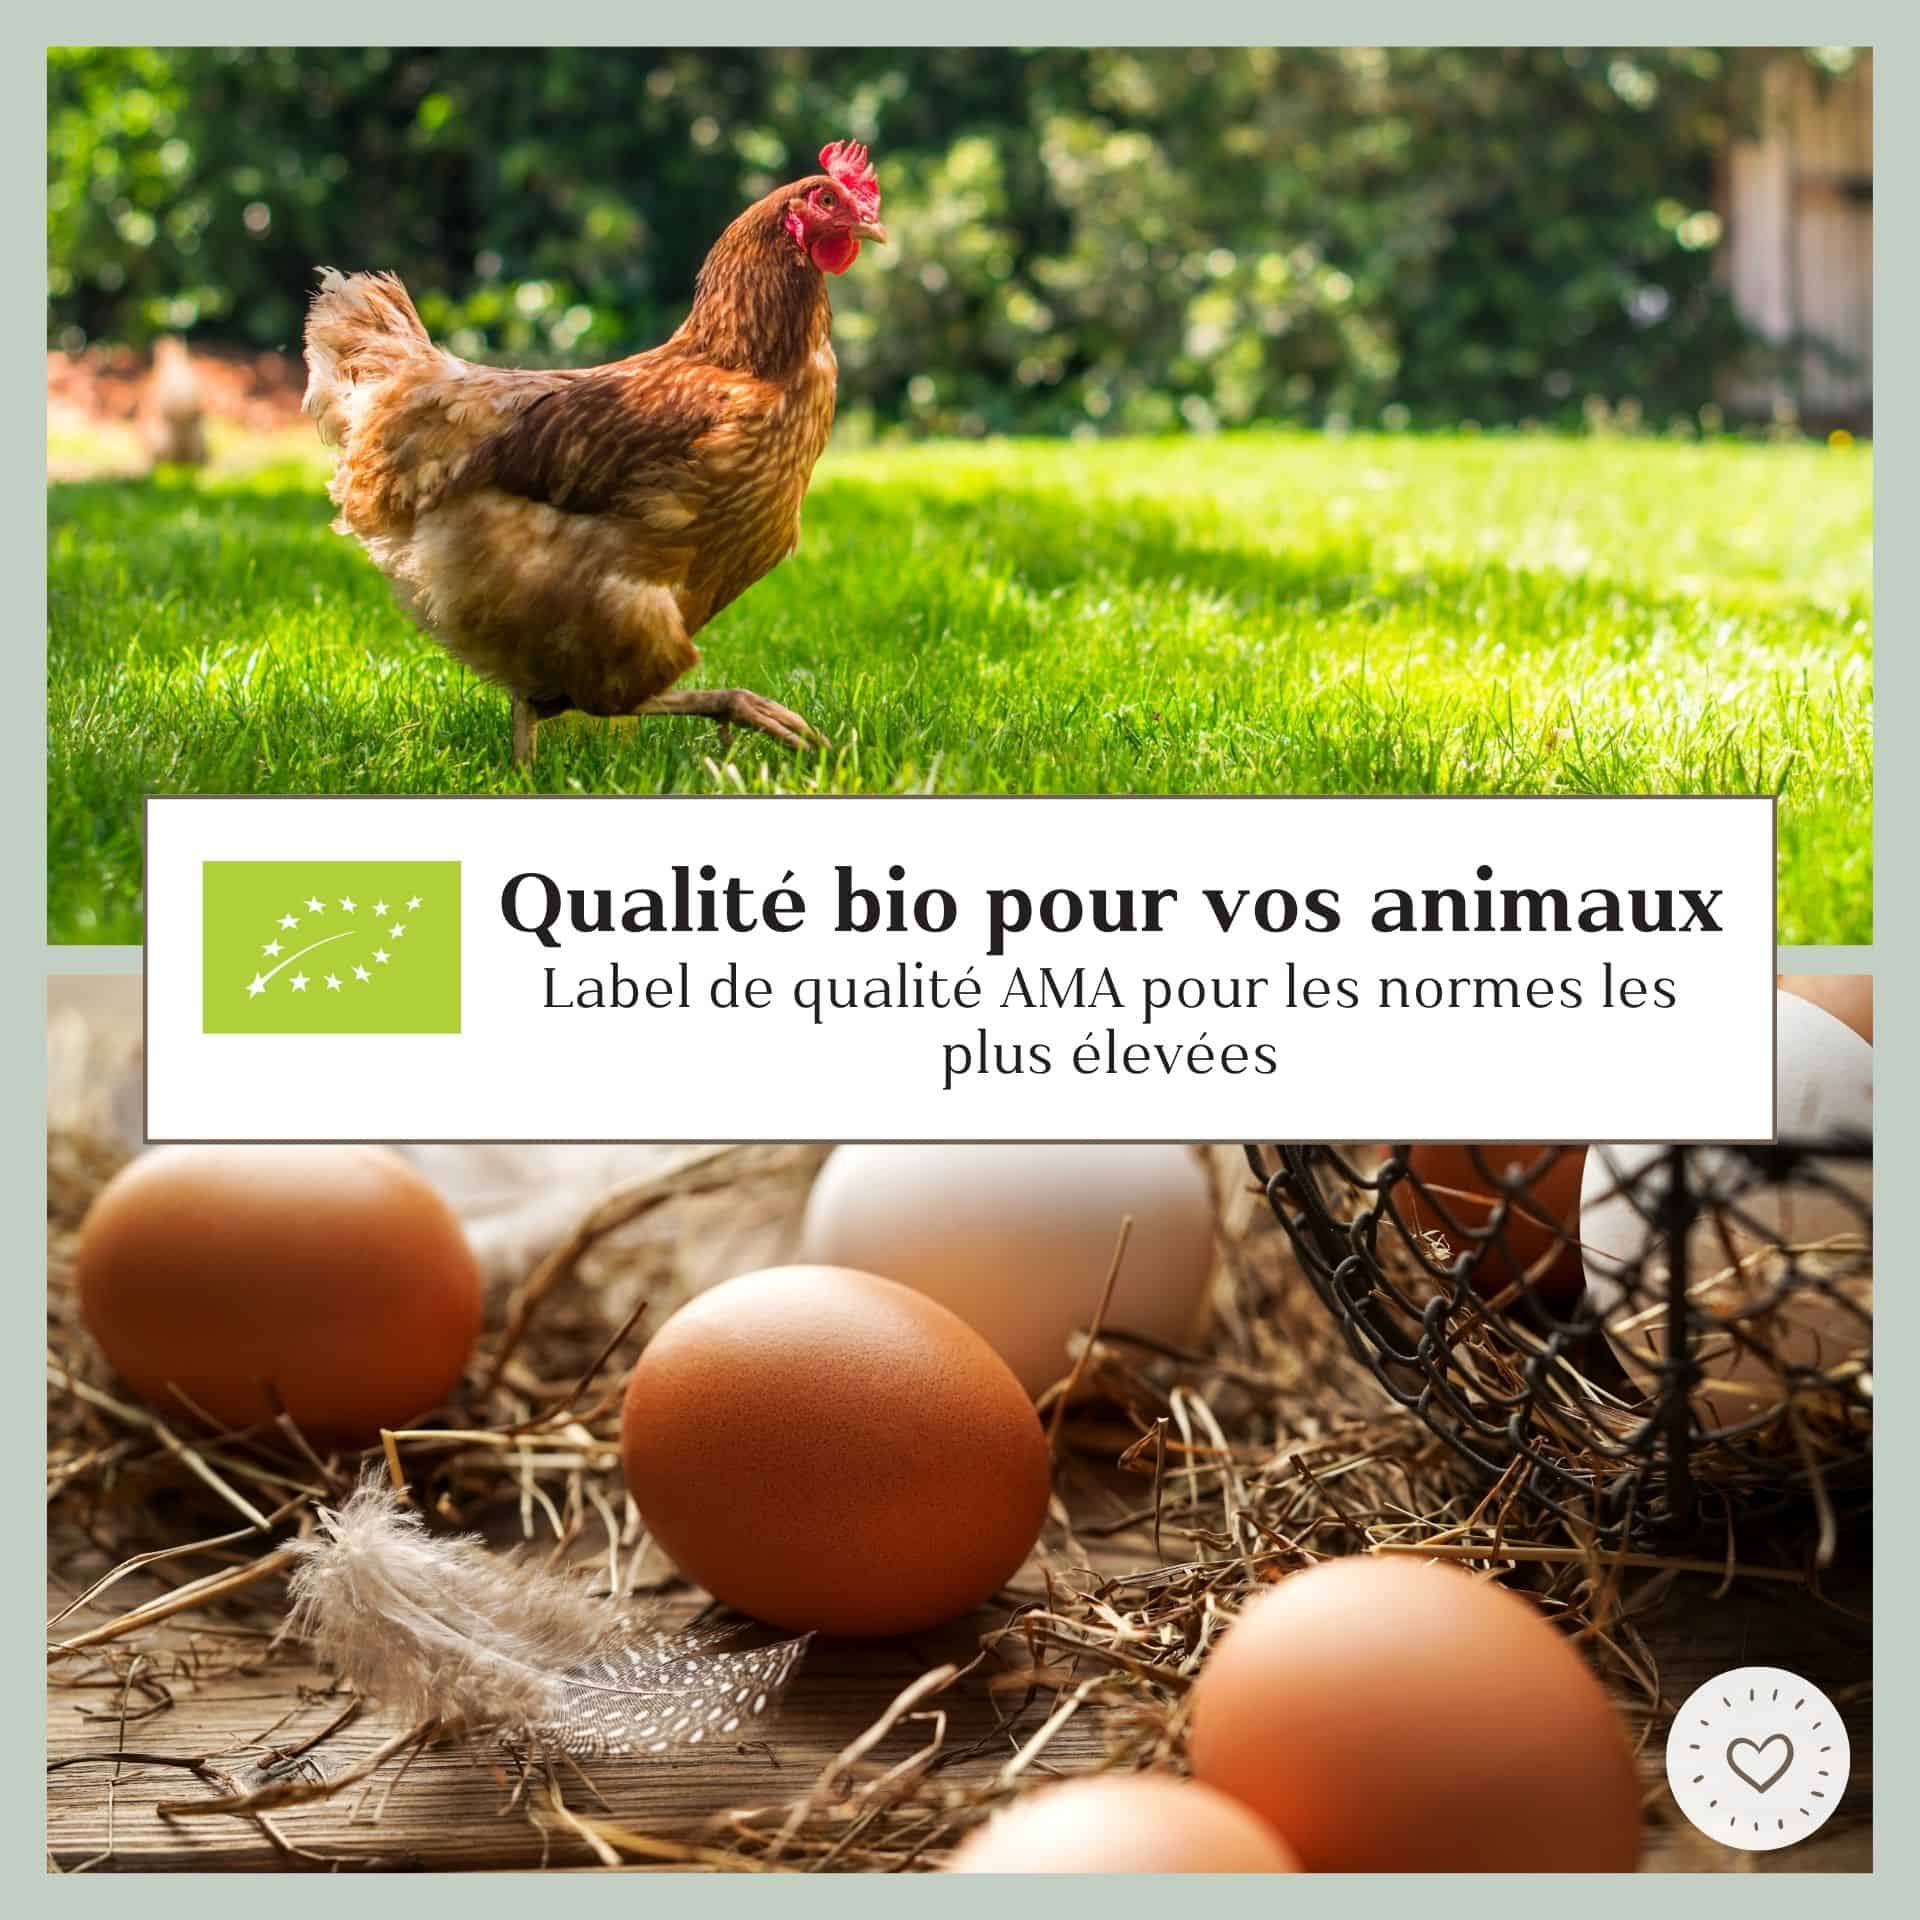 Nourriture Bio Agrarzone pour poules mélange de graines 25 kg